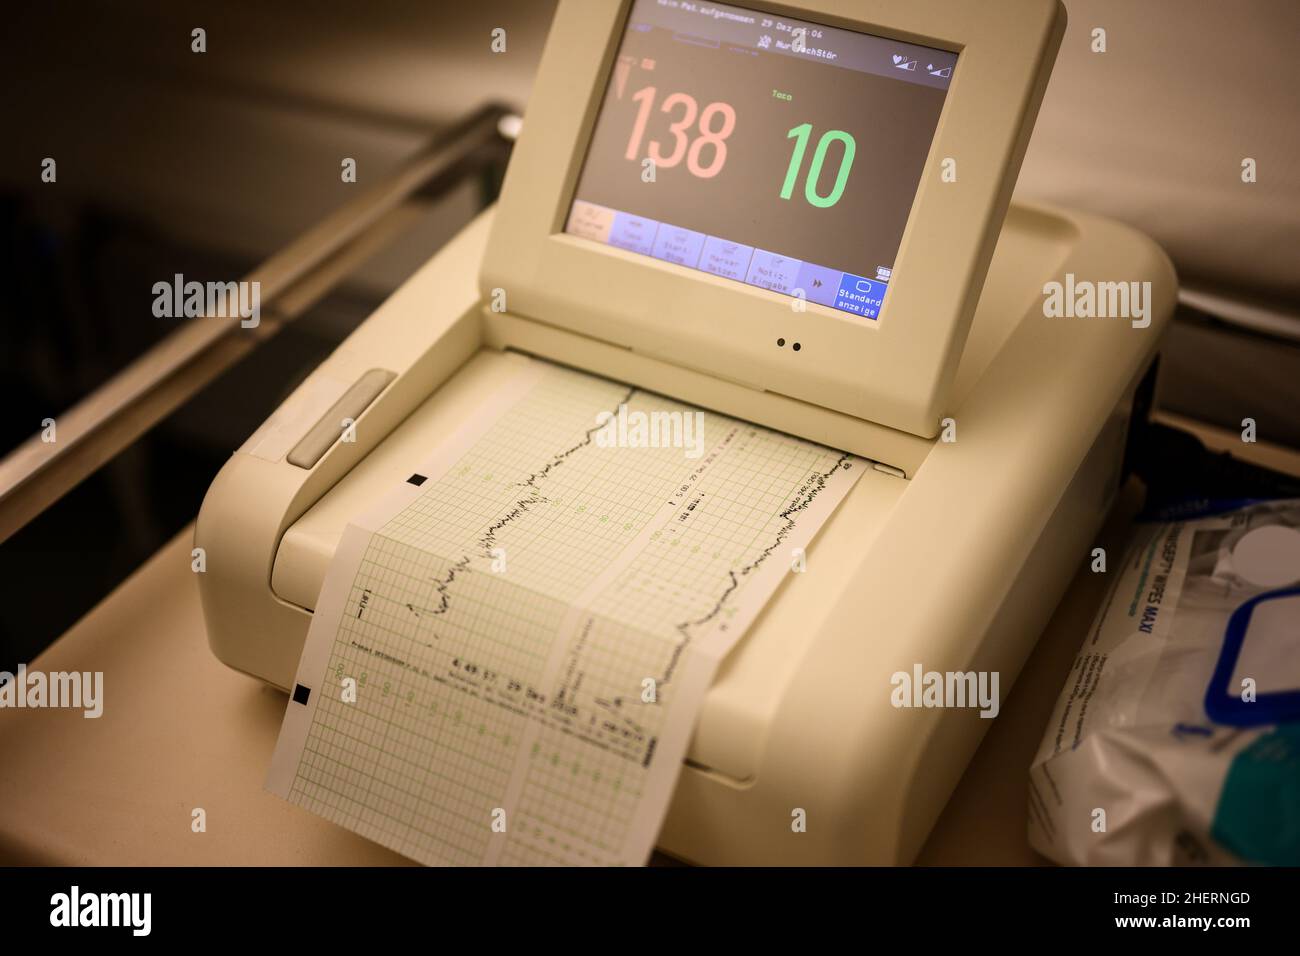 appareil de cardiotographie de l'hôpital avec moniteur et graphique sur papier Banque D'Images